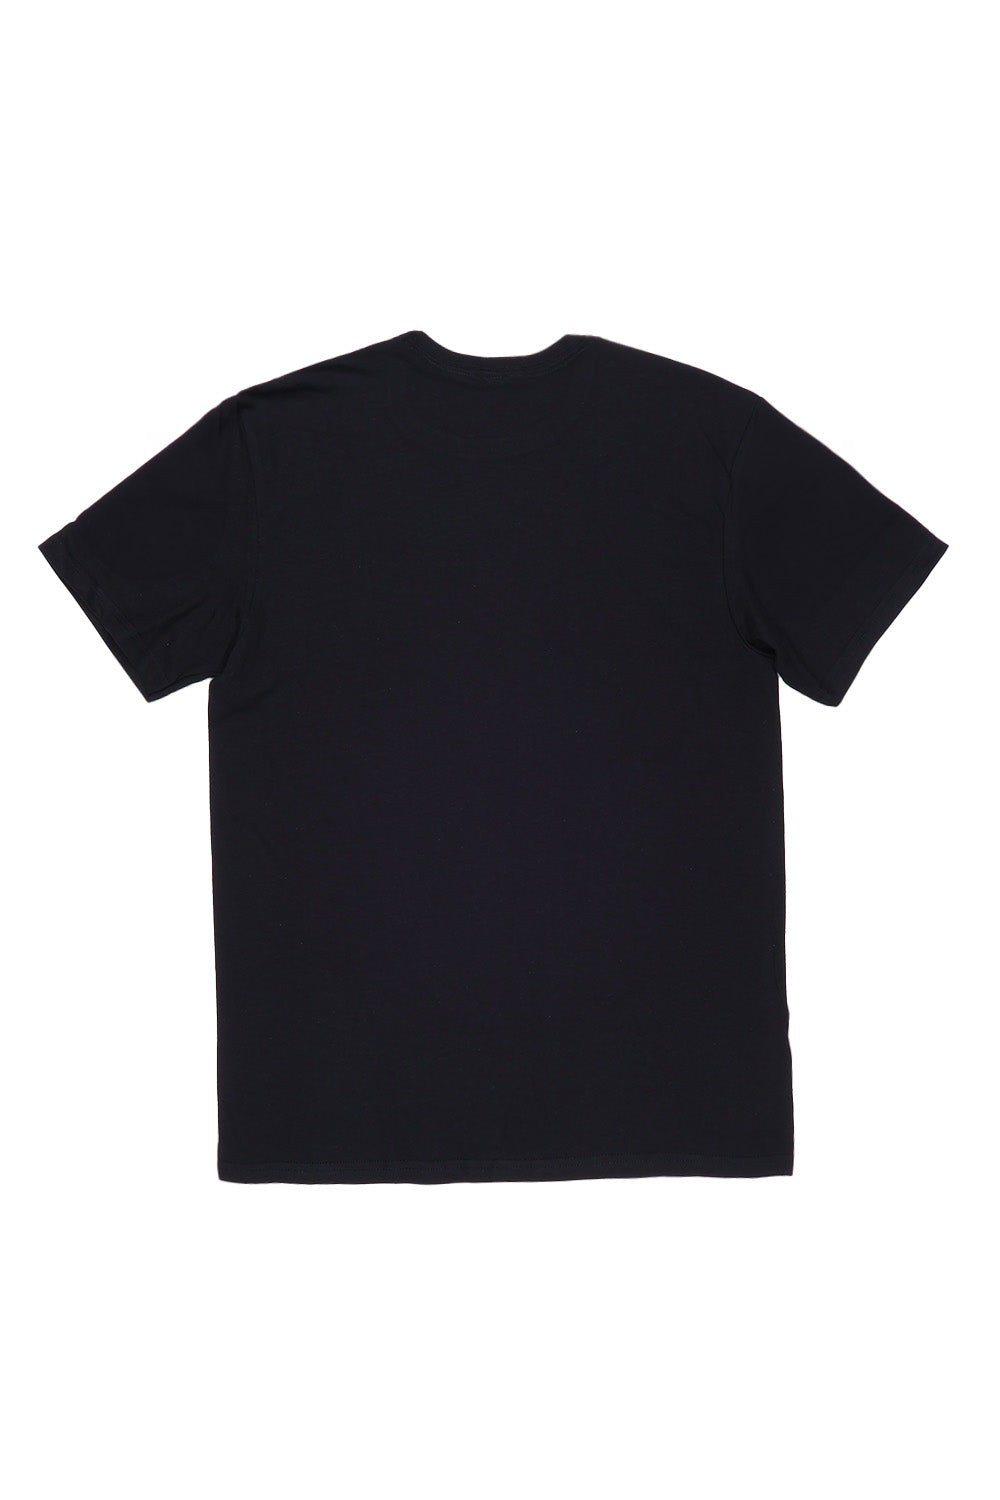 Los Angeles T-Shirt in Black (Custom Packs)